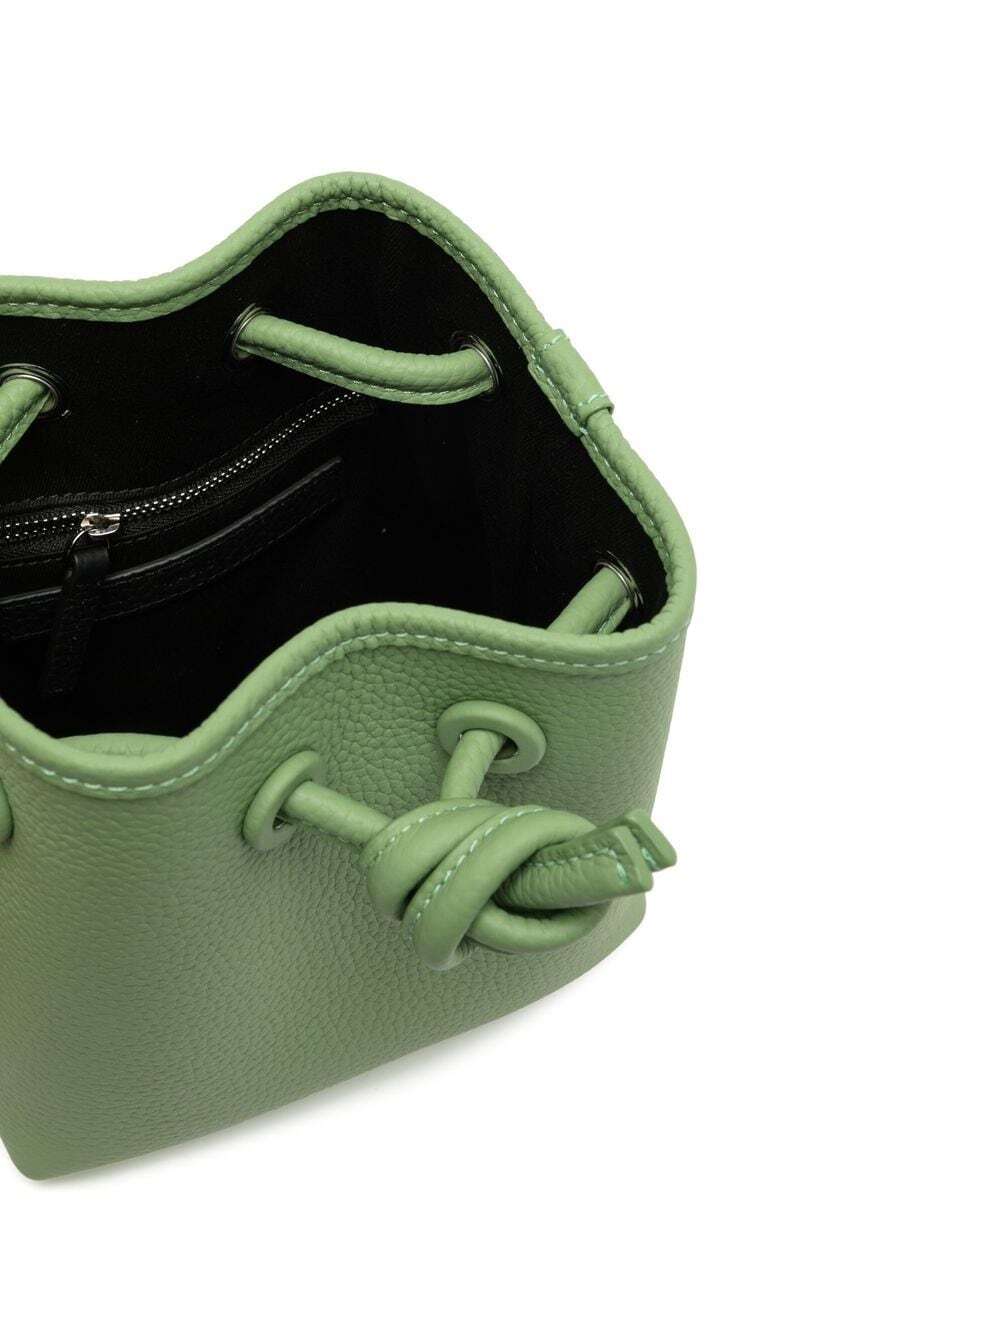 Vasic Bond mini leather bag - Green